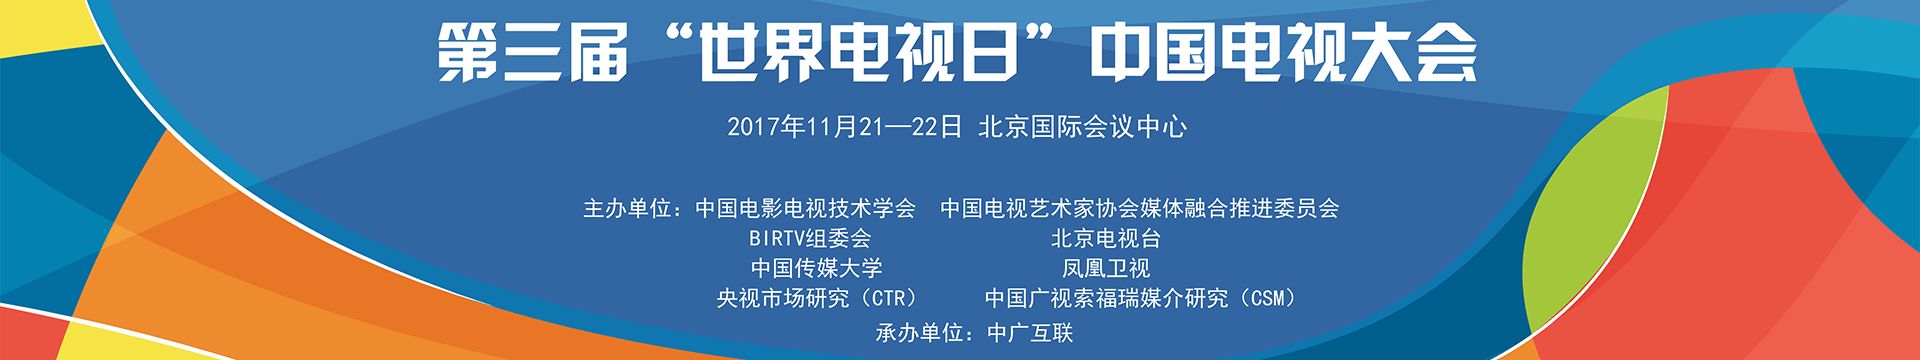 第三届“世界电视日”中国电视大会